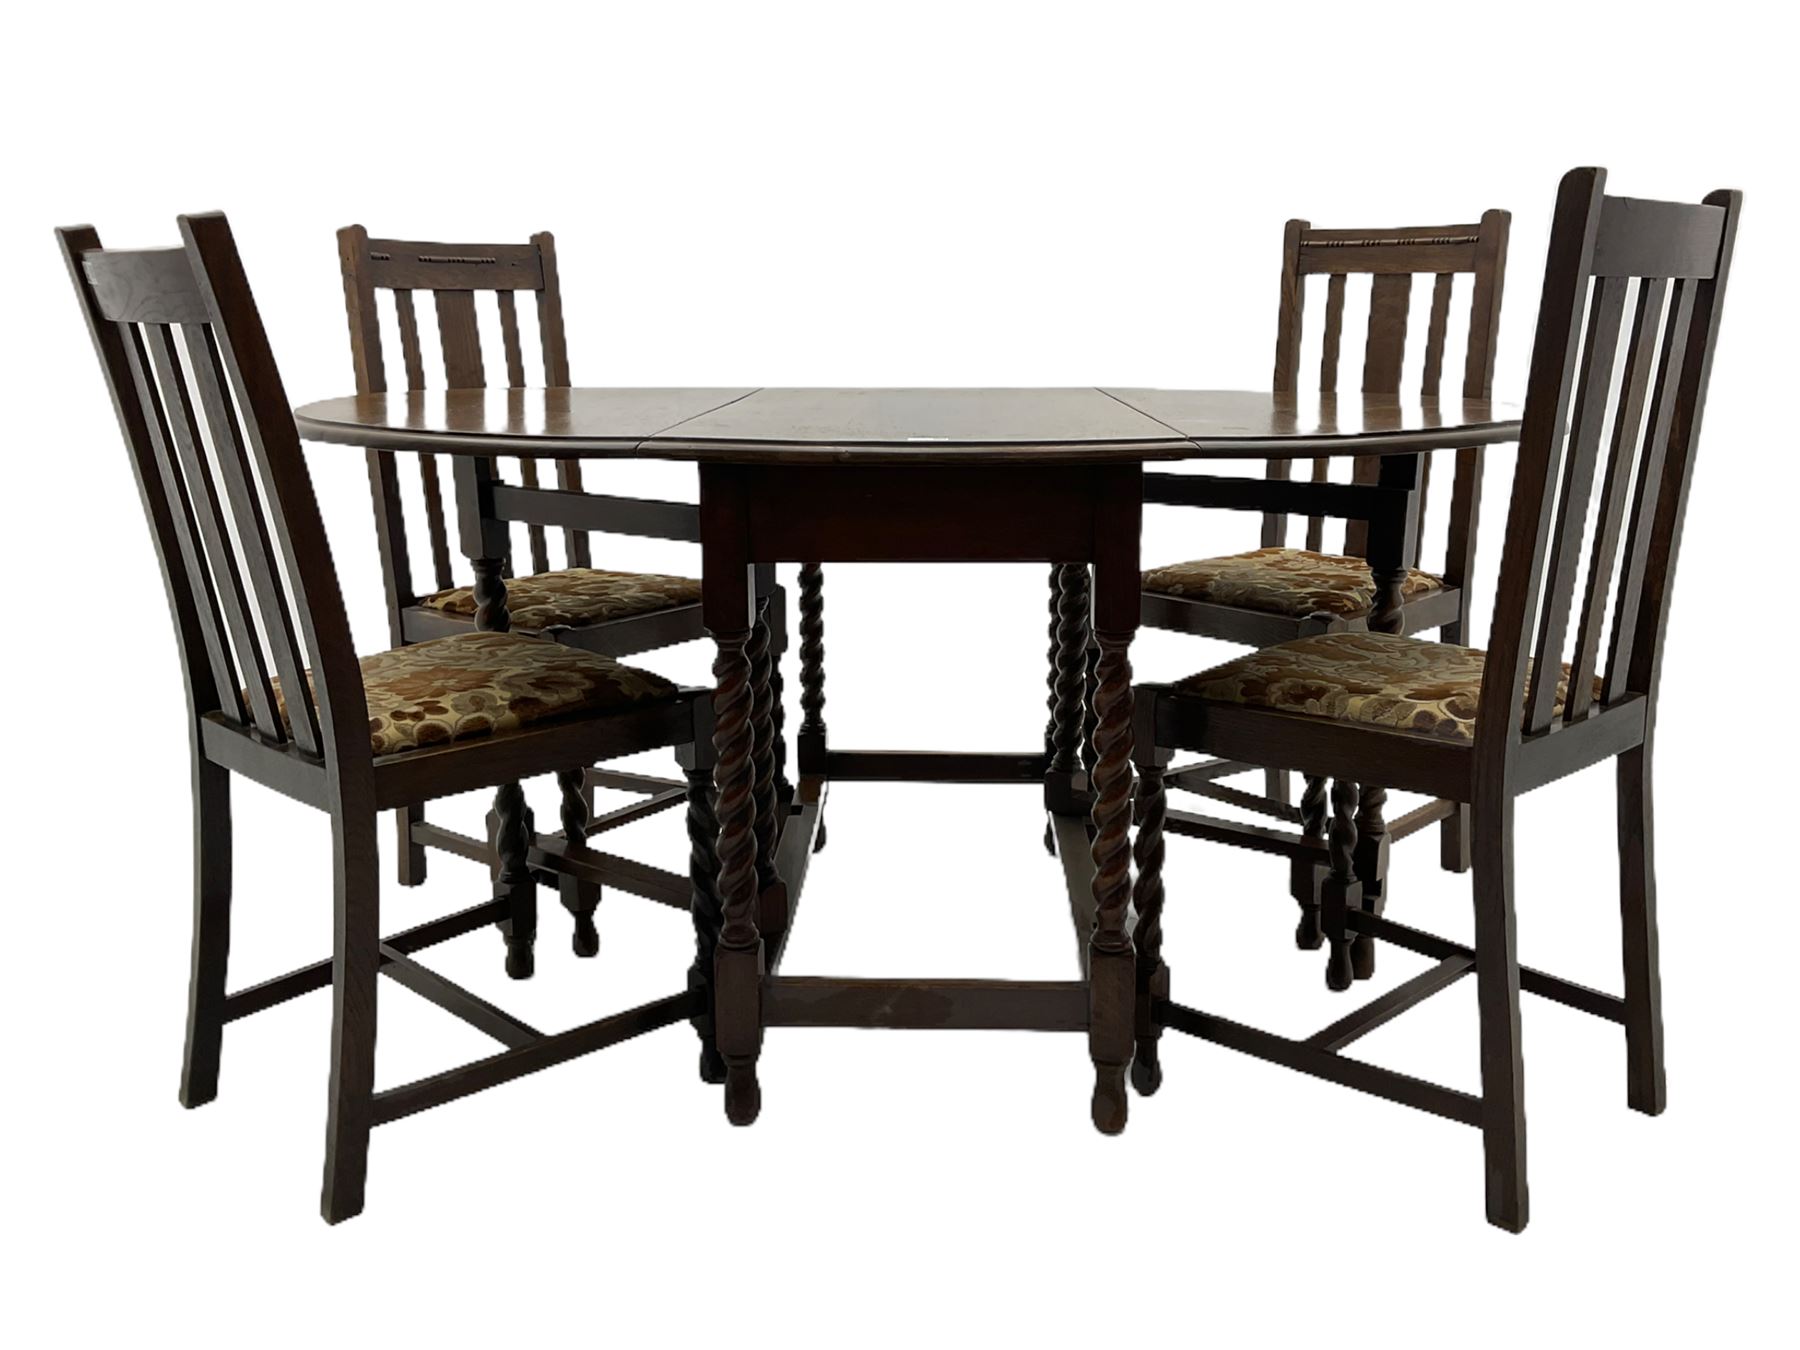 Early 20th century oak barley twist drop leaf dining table (105cm x 154cm - Image 14 of 24